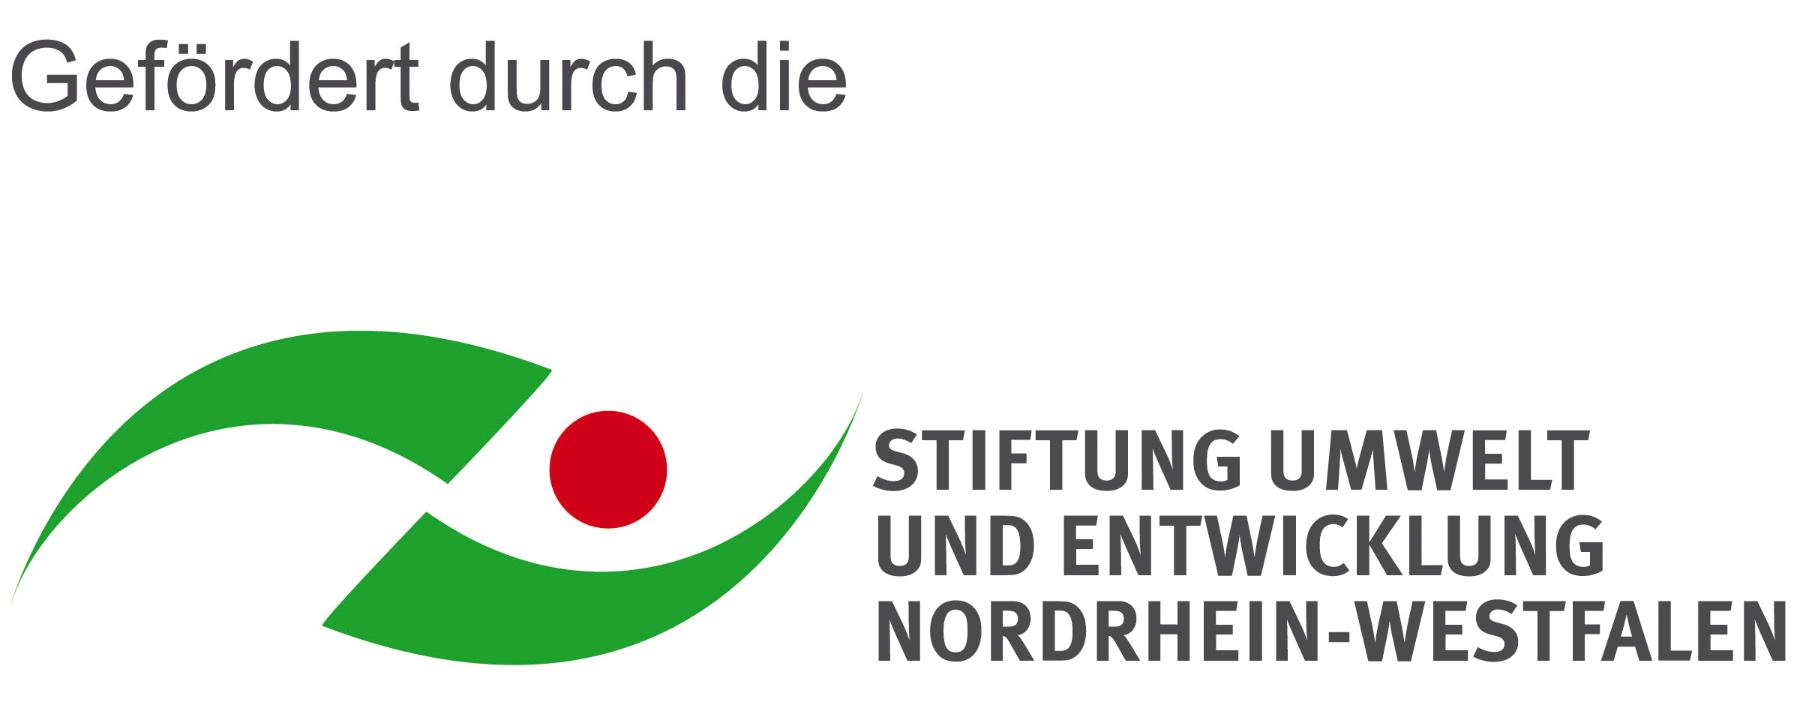 Stiftung Umwelt und Entwicklung NRW (c) SUE